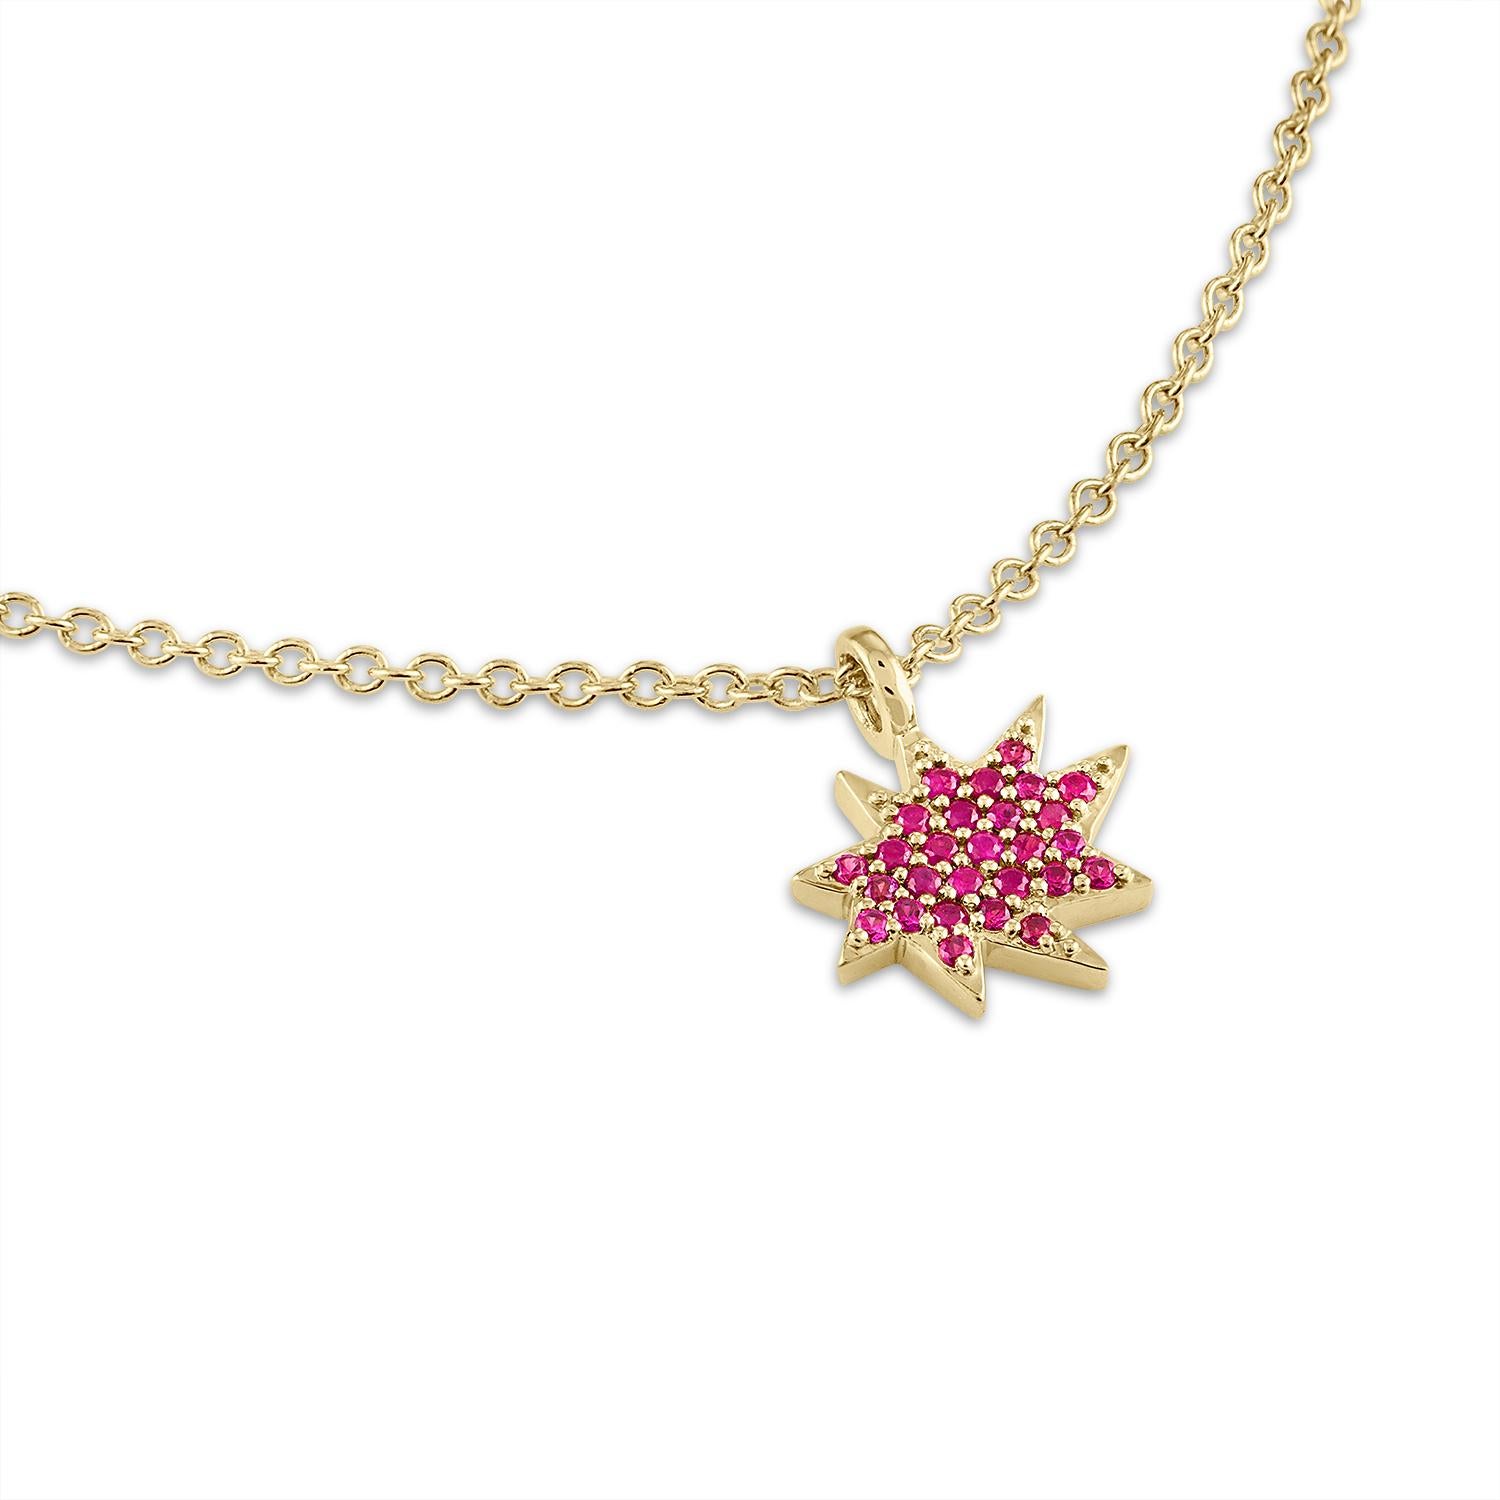 Elegant und bezaubernd! Unsere Mini-Stella-Halskette ist das perfekte Schmuckstück für mehrere Schichten oder zum alleinigen Tragen. Unser kultiger Bio-Stern aus 14 Karat Gold in einer neuen, zarten Größe hängt an einer 14 Karat Goldkette und